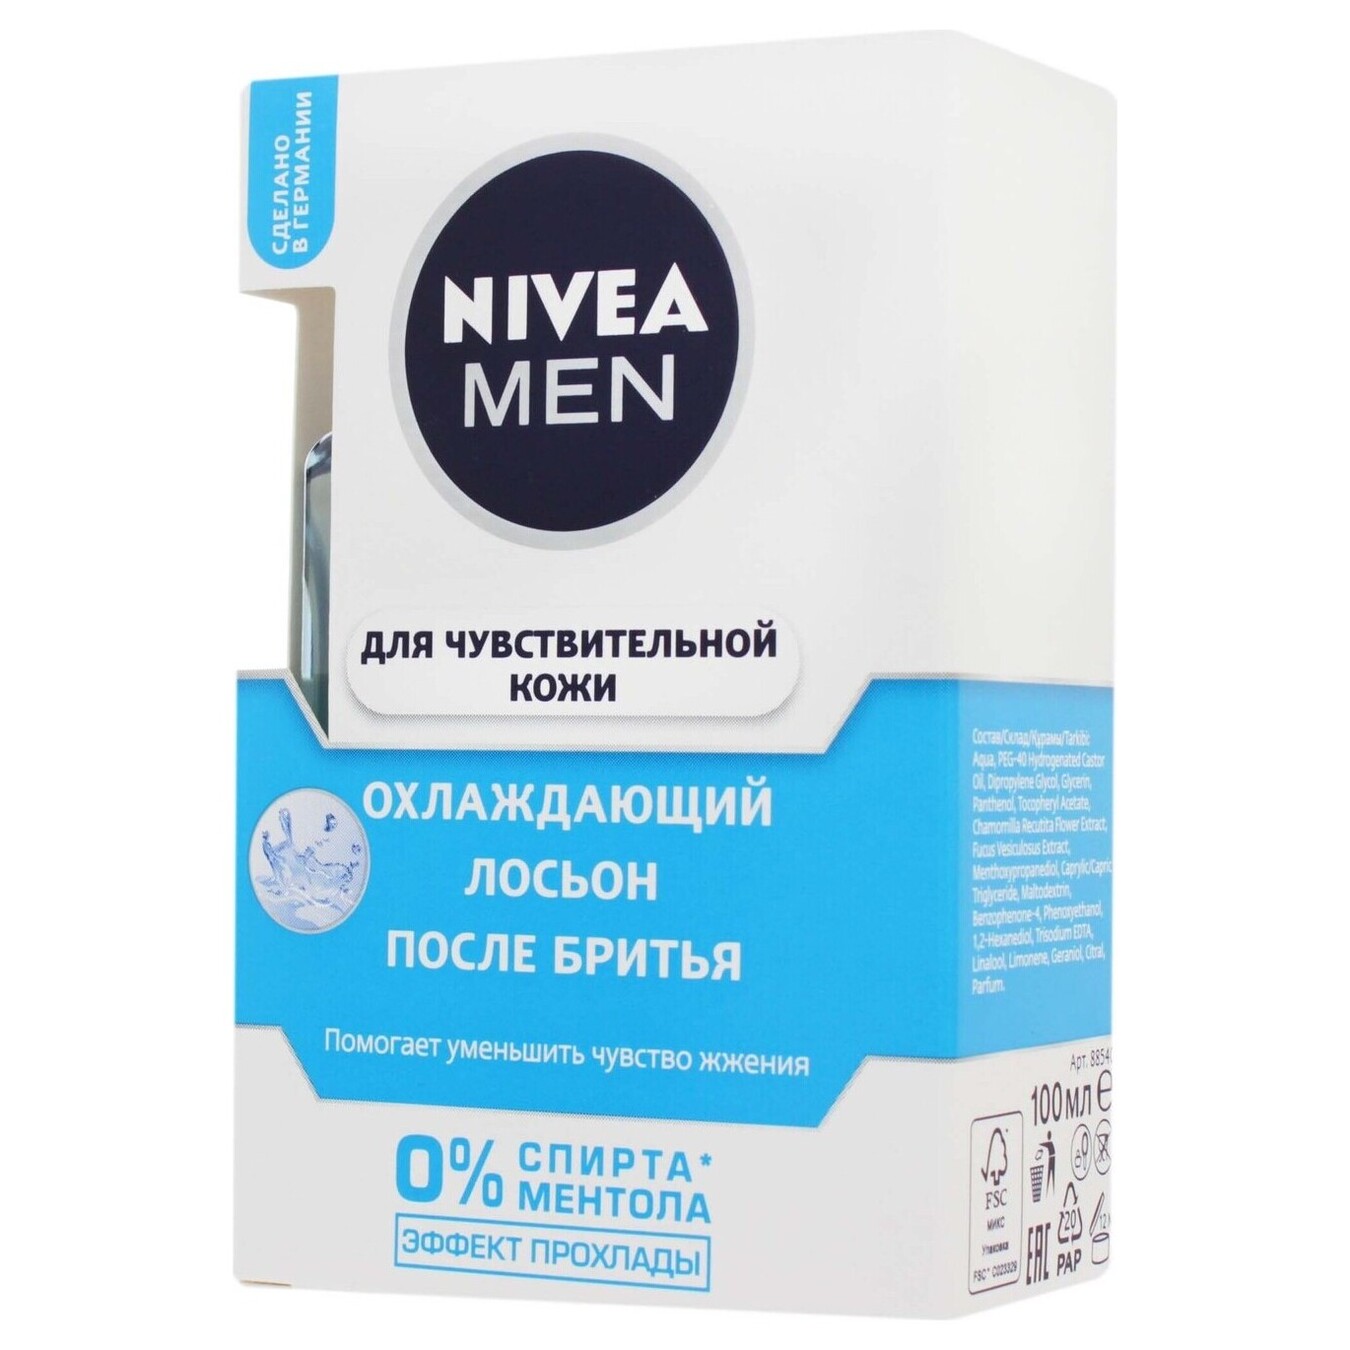 Nivea Men After Shave Lotion Cooling for sensitive skin 100ml 2